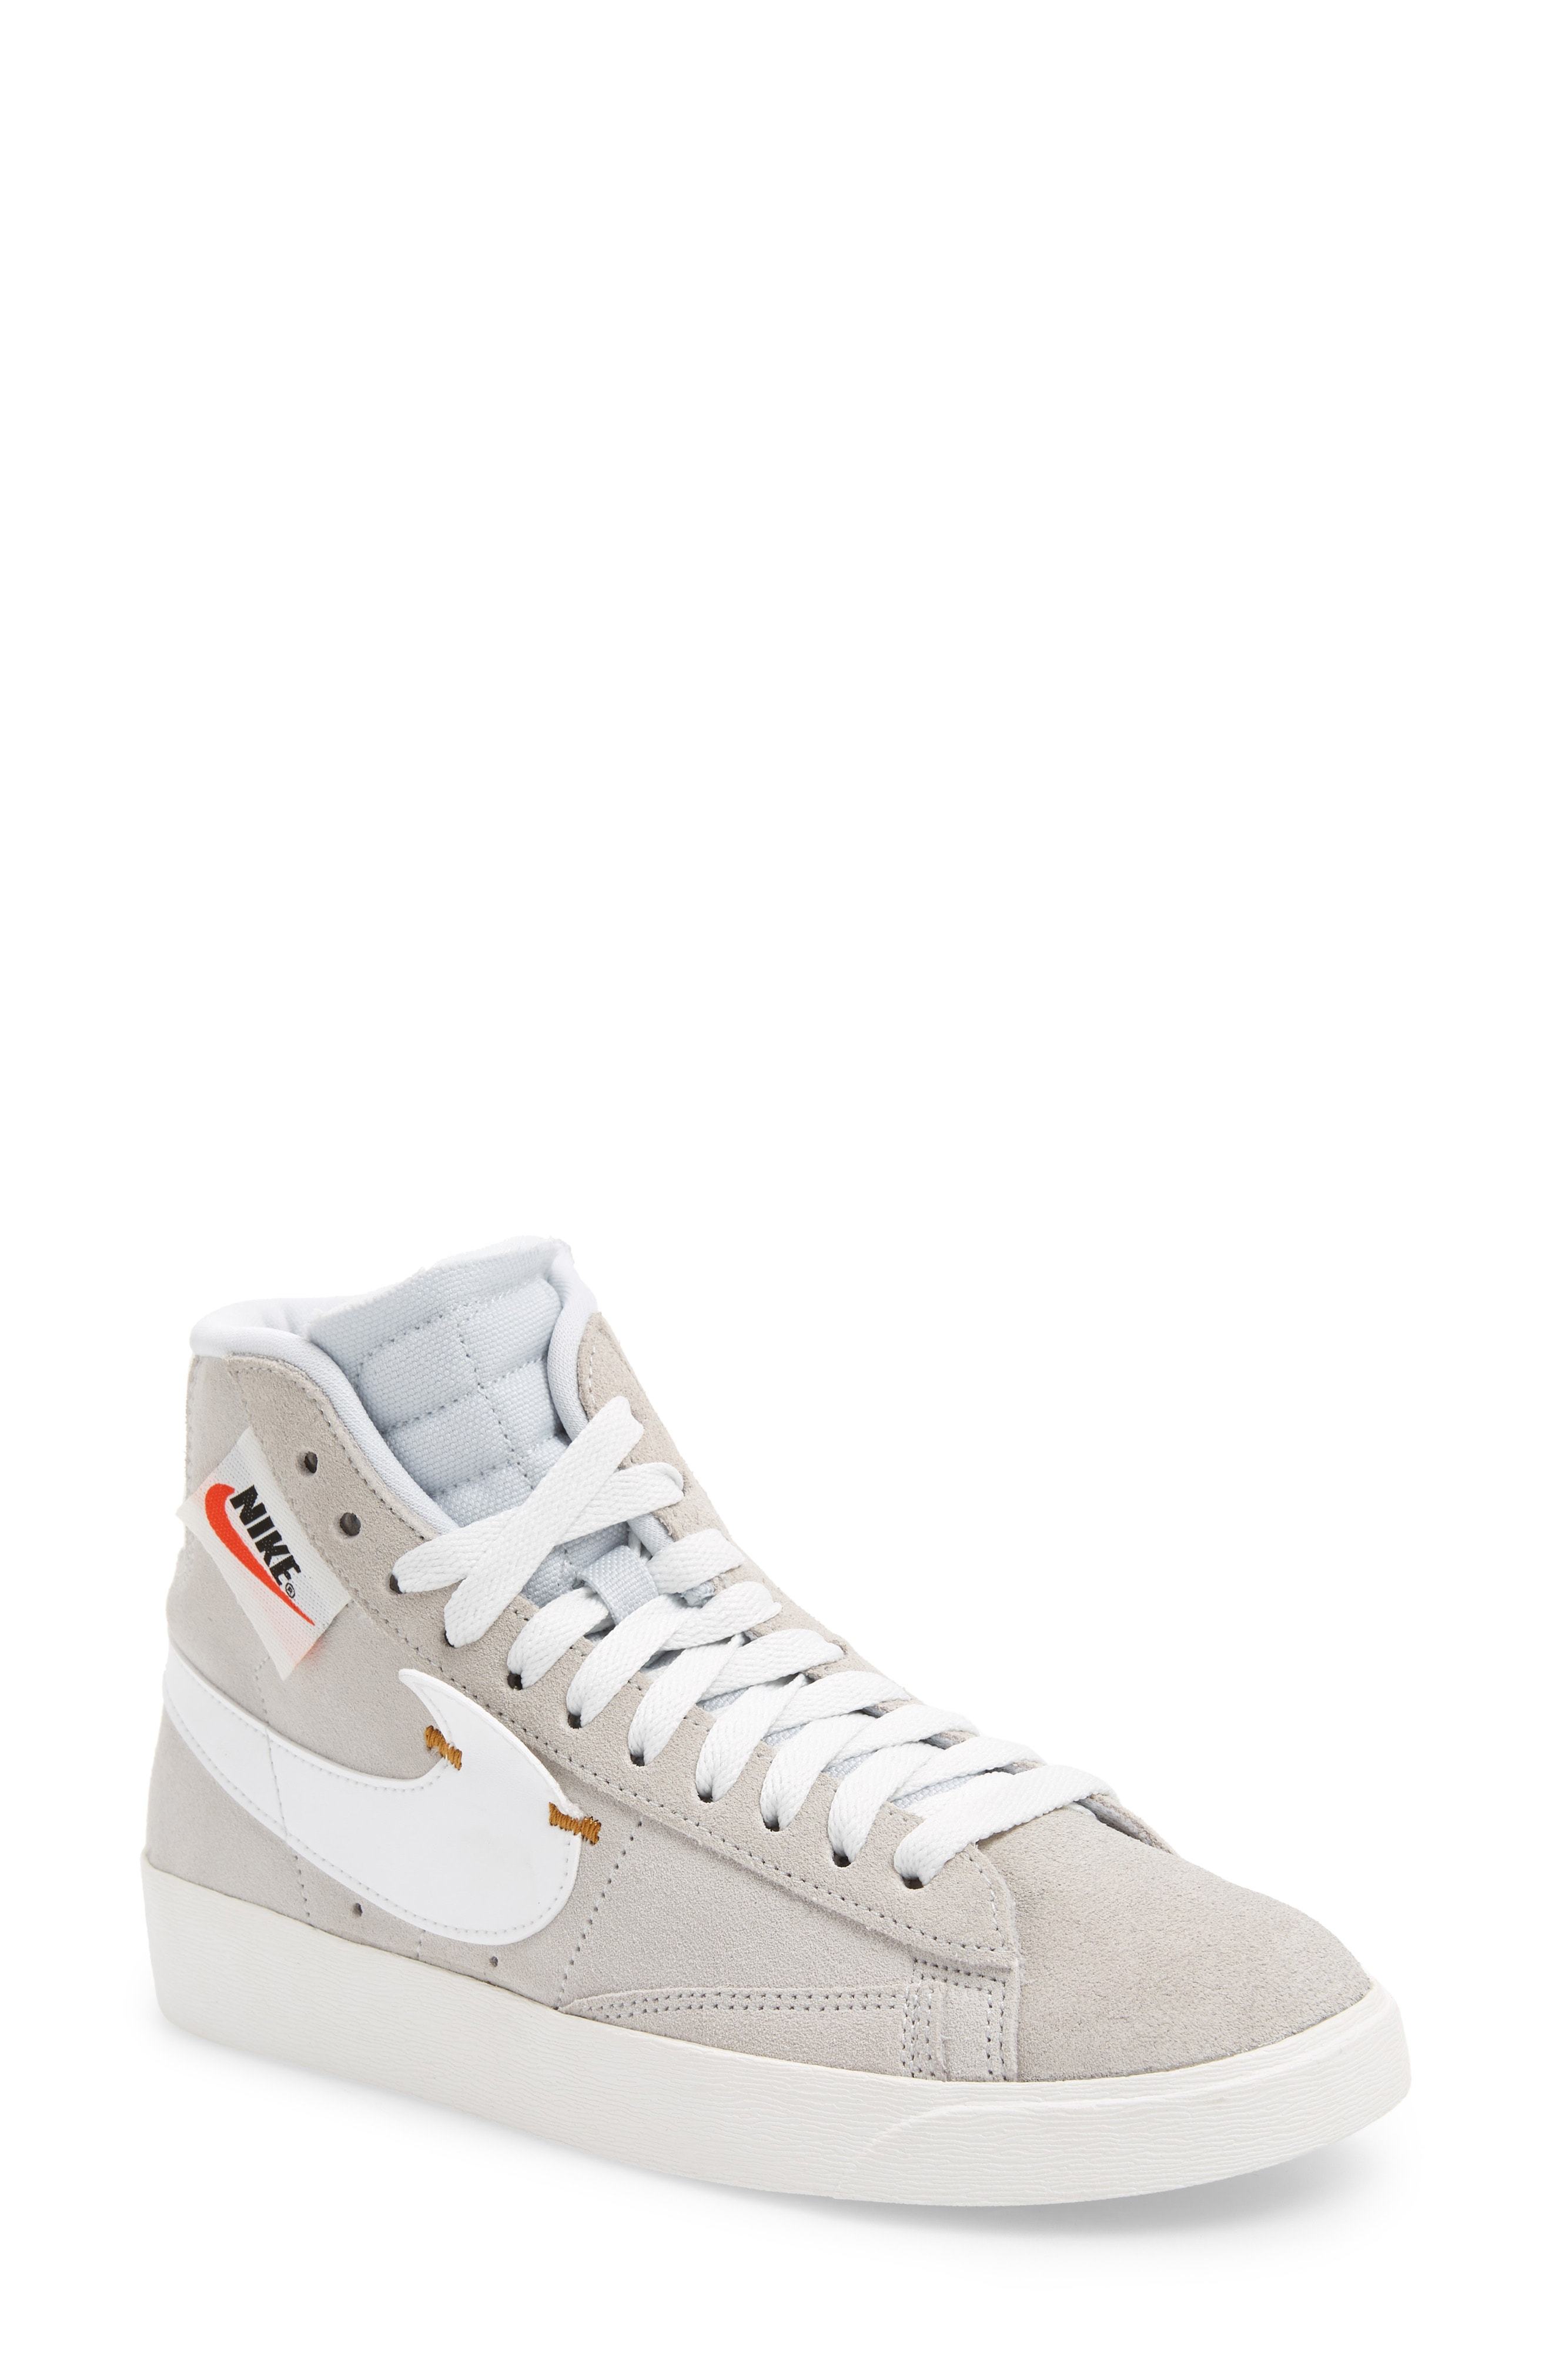 Nike Blazer Mid Rebel Sneaker, $100 